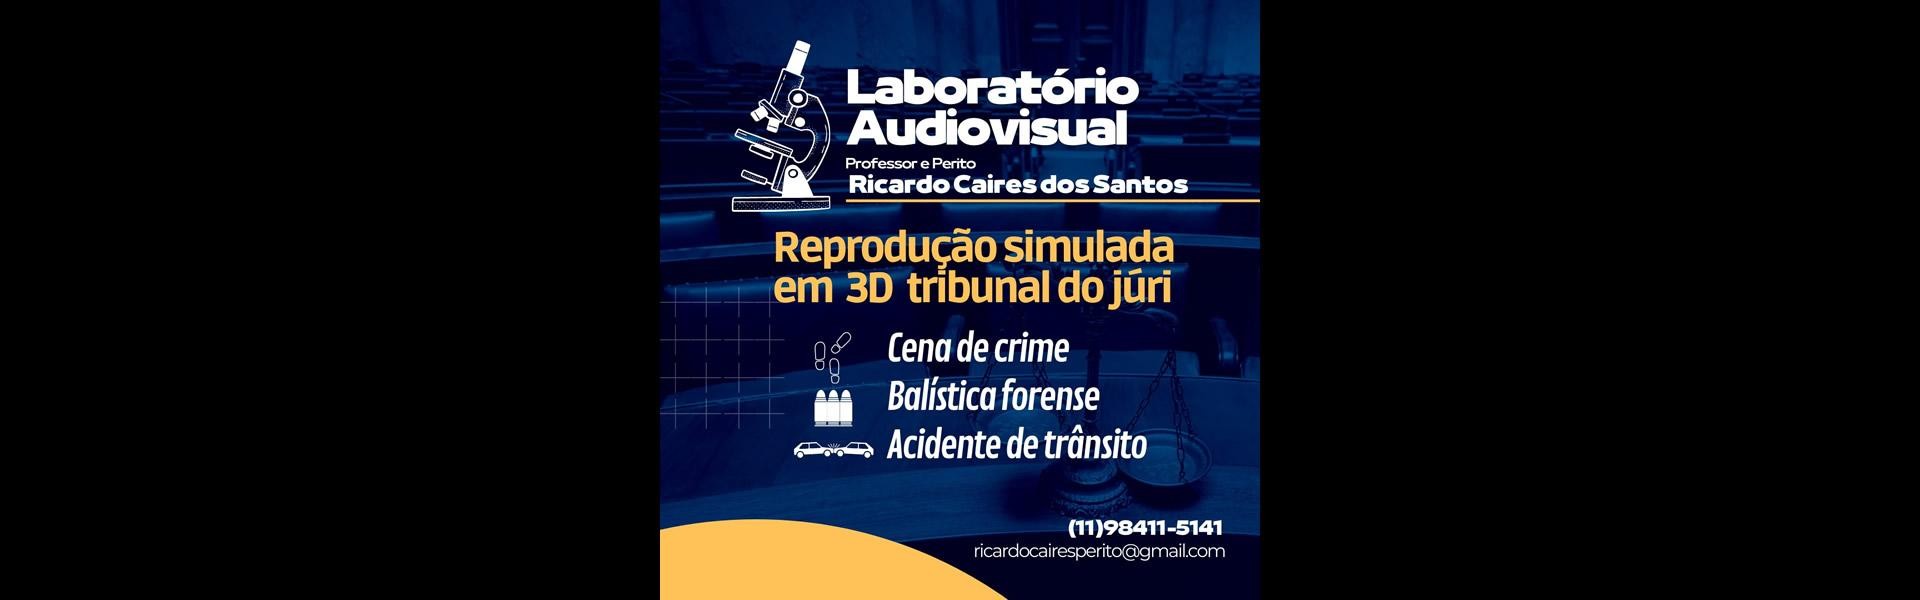 Laboratório AudioVisual